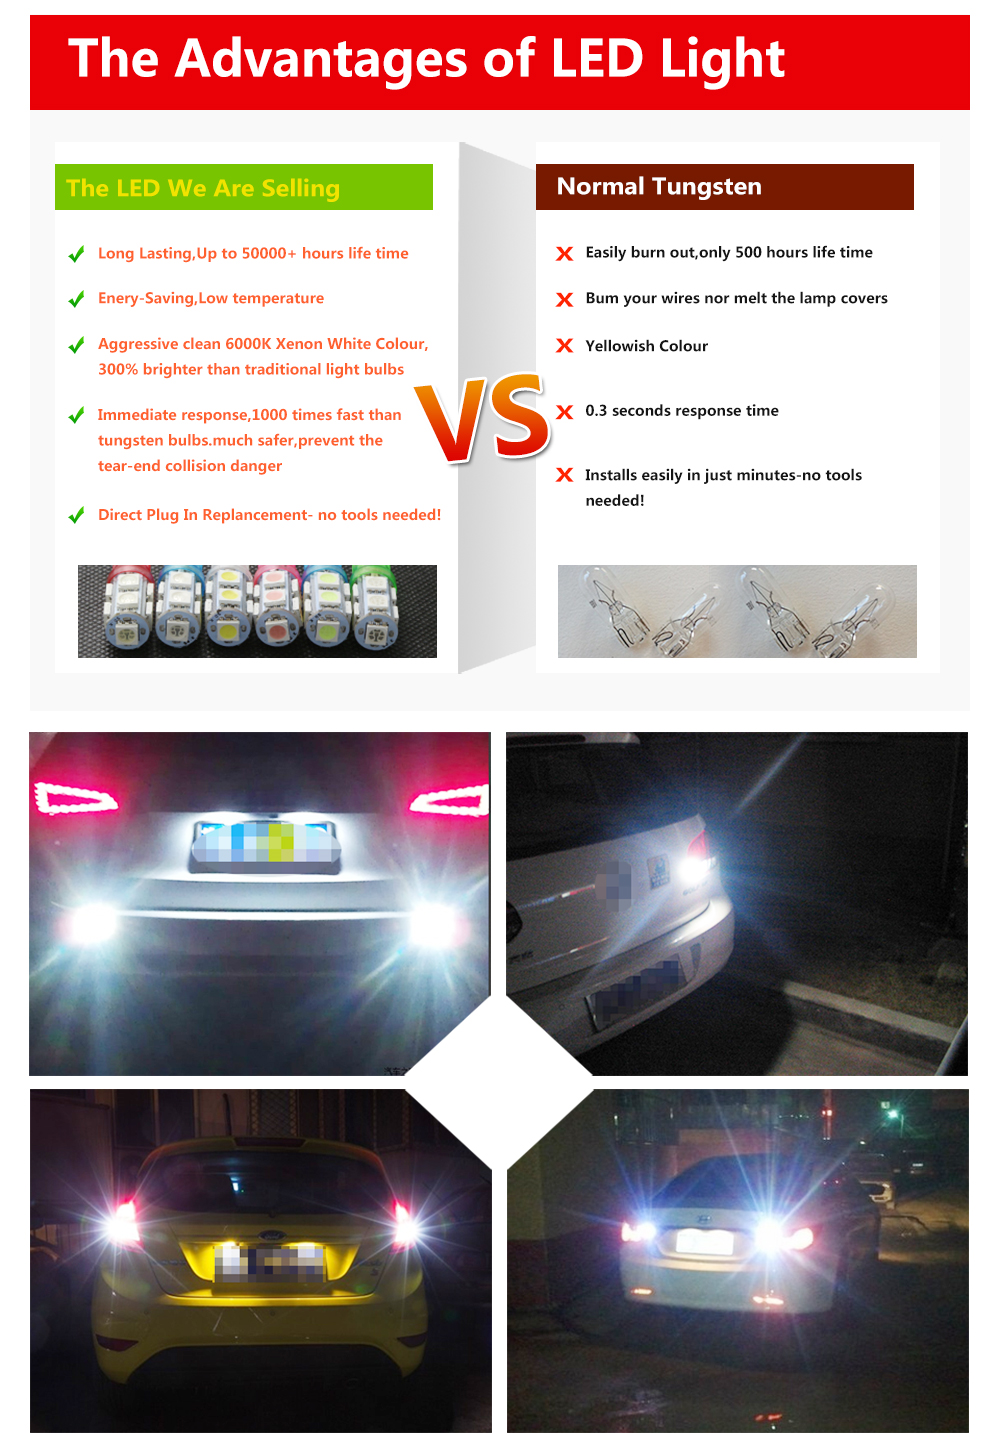 10PCS 1157 BAY15D Car 6000K 27-SMD 5050 LED Tail Turn Signal Light Lamps Bulbs Xenon White